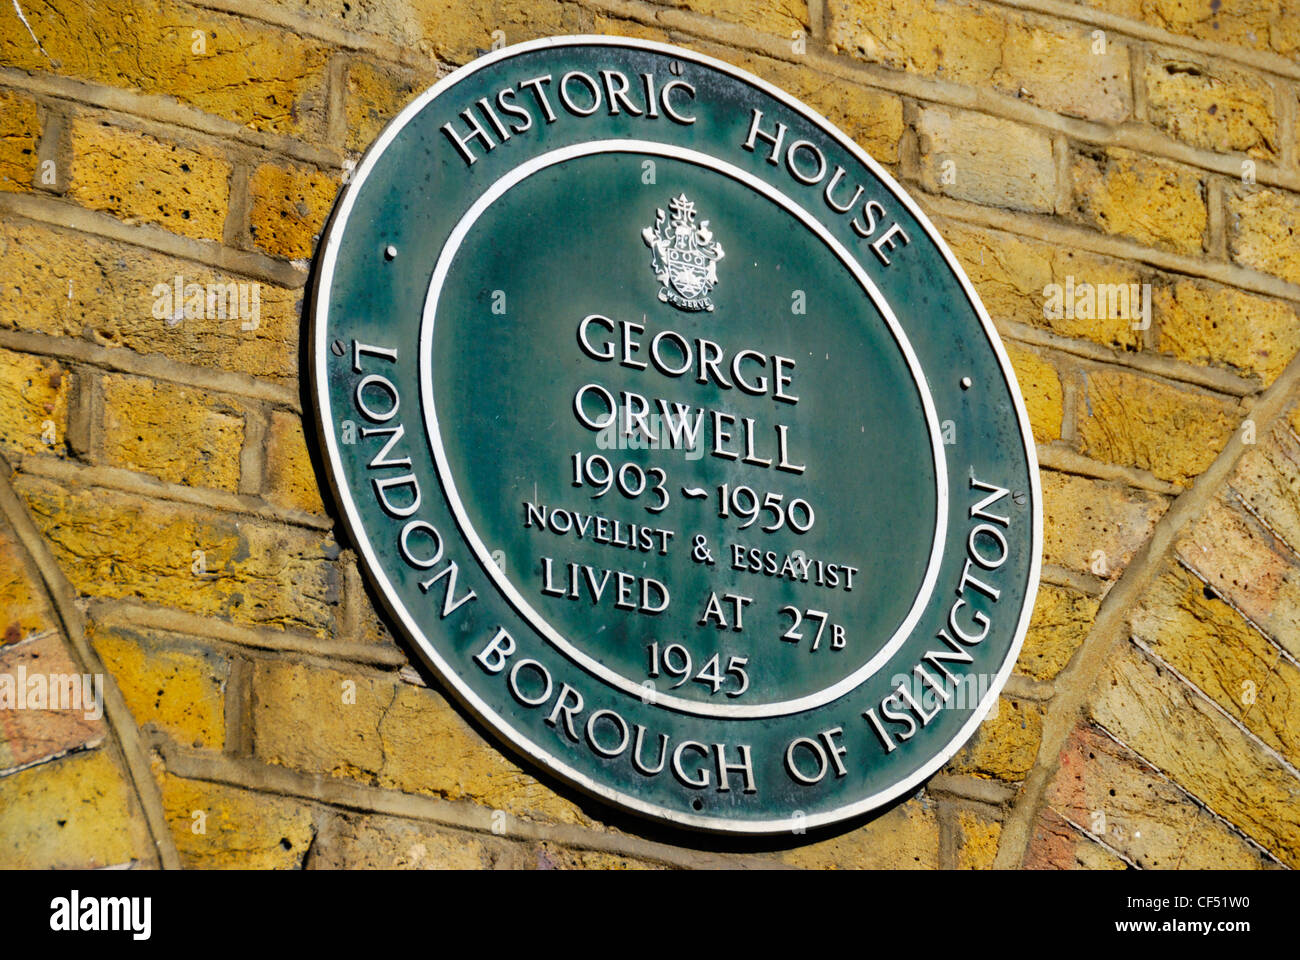 Historisches Haus grün Plakette markiert den Standort des ehemaligen Haus von George Orwell 27 b Canonbury Square. Stockfoto